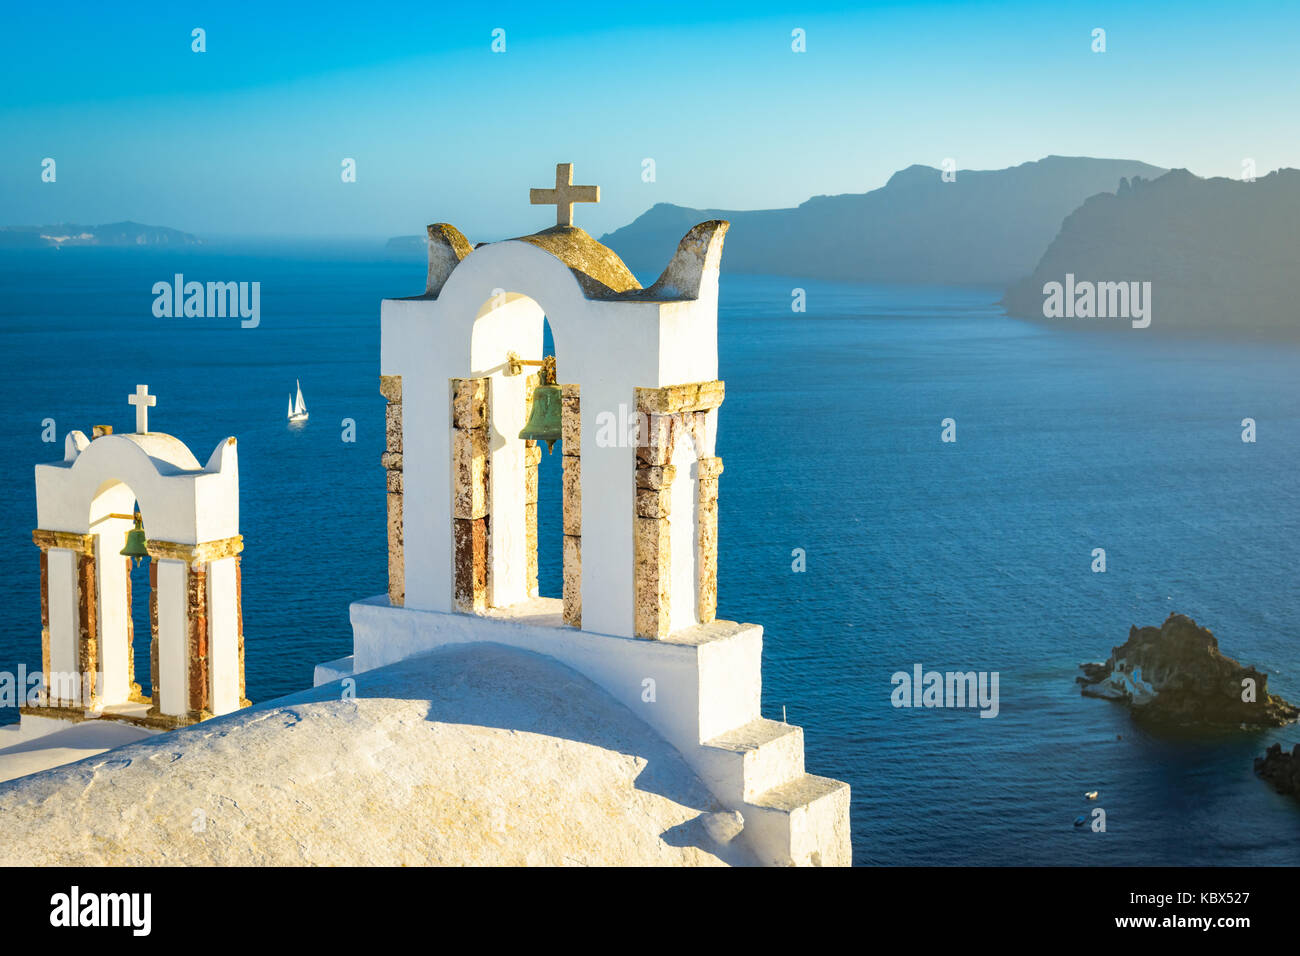 Le campane della chiesa su una chiesa greco ortodossa che si affaccia sul mare egeo nella cittadina di Oia sull isola di Santorini nelle cicladi al largo delle principali Foto Stock